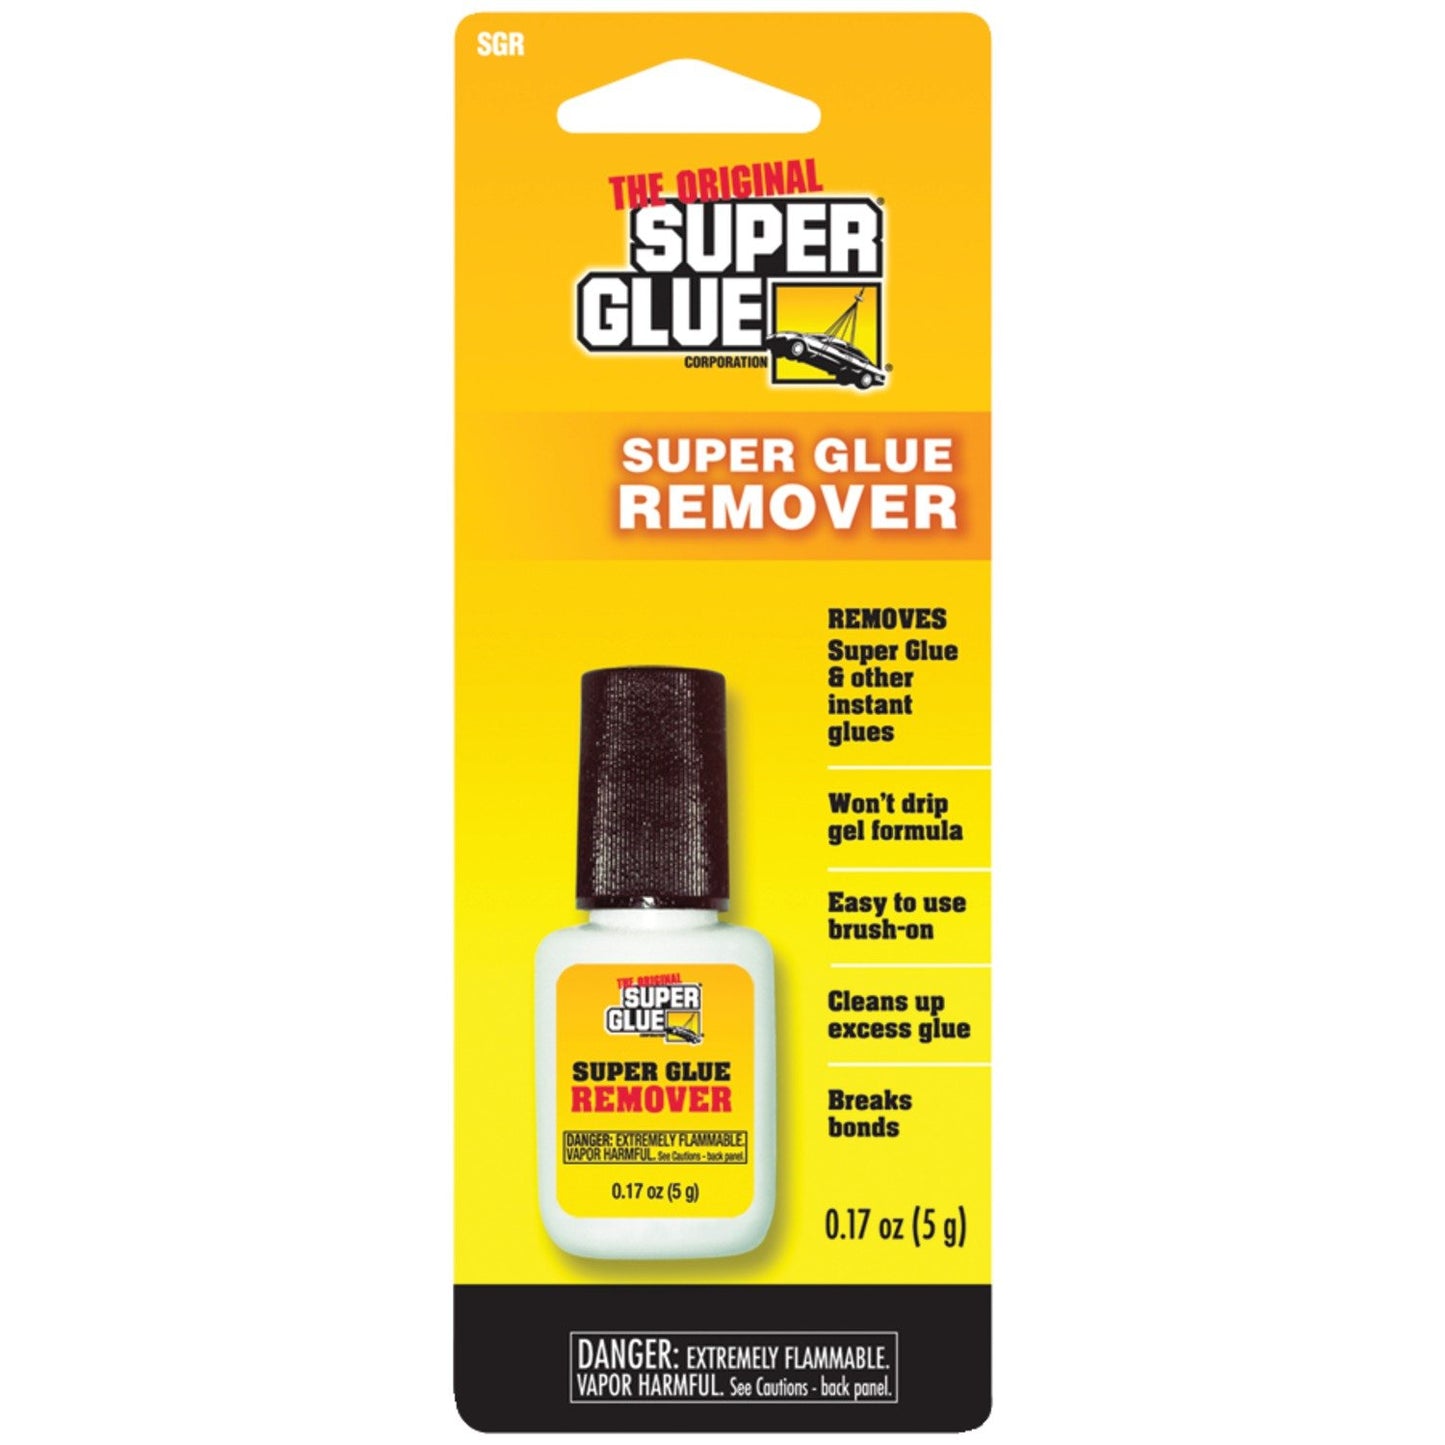 THE ORIGINAL SUPERGLUE SGR12 Super Glue Remover